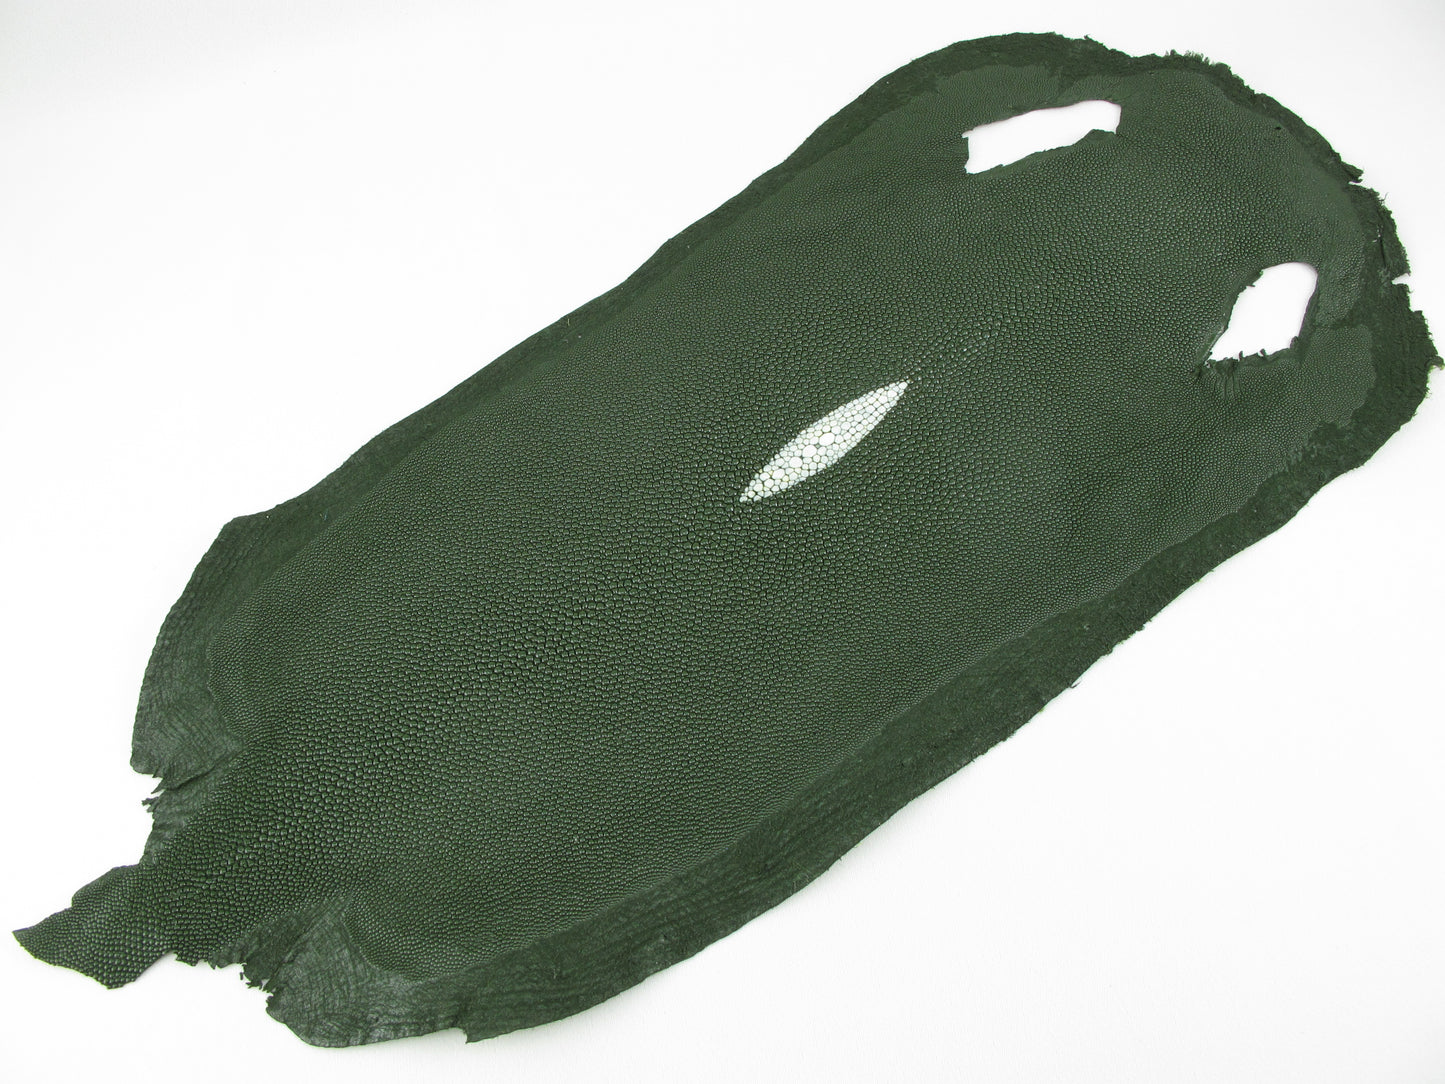 Genuine Stingray Skin Leather Long Shape Hide Pelt Chrome Green